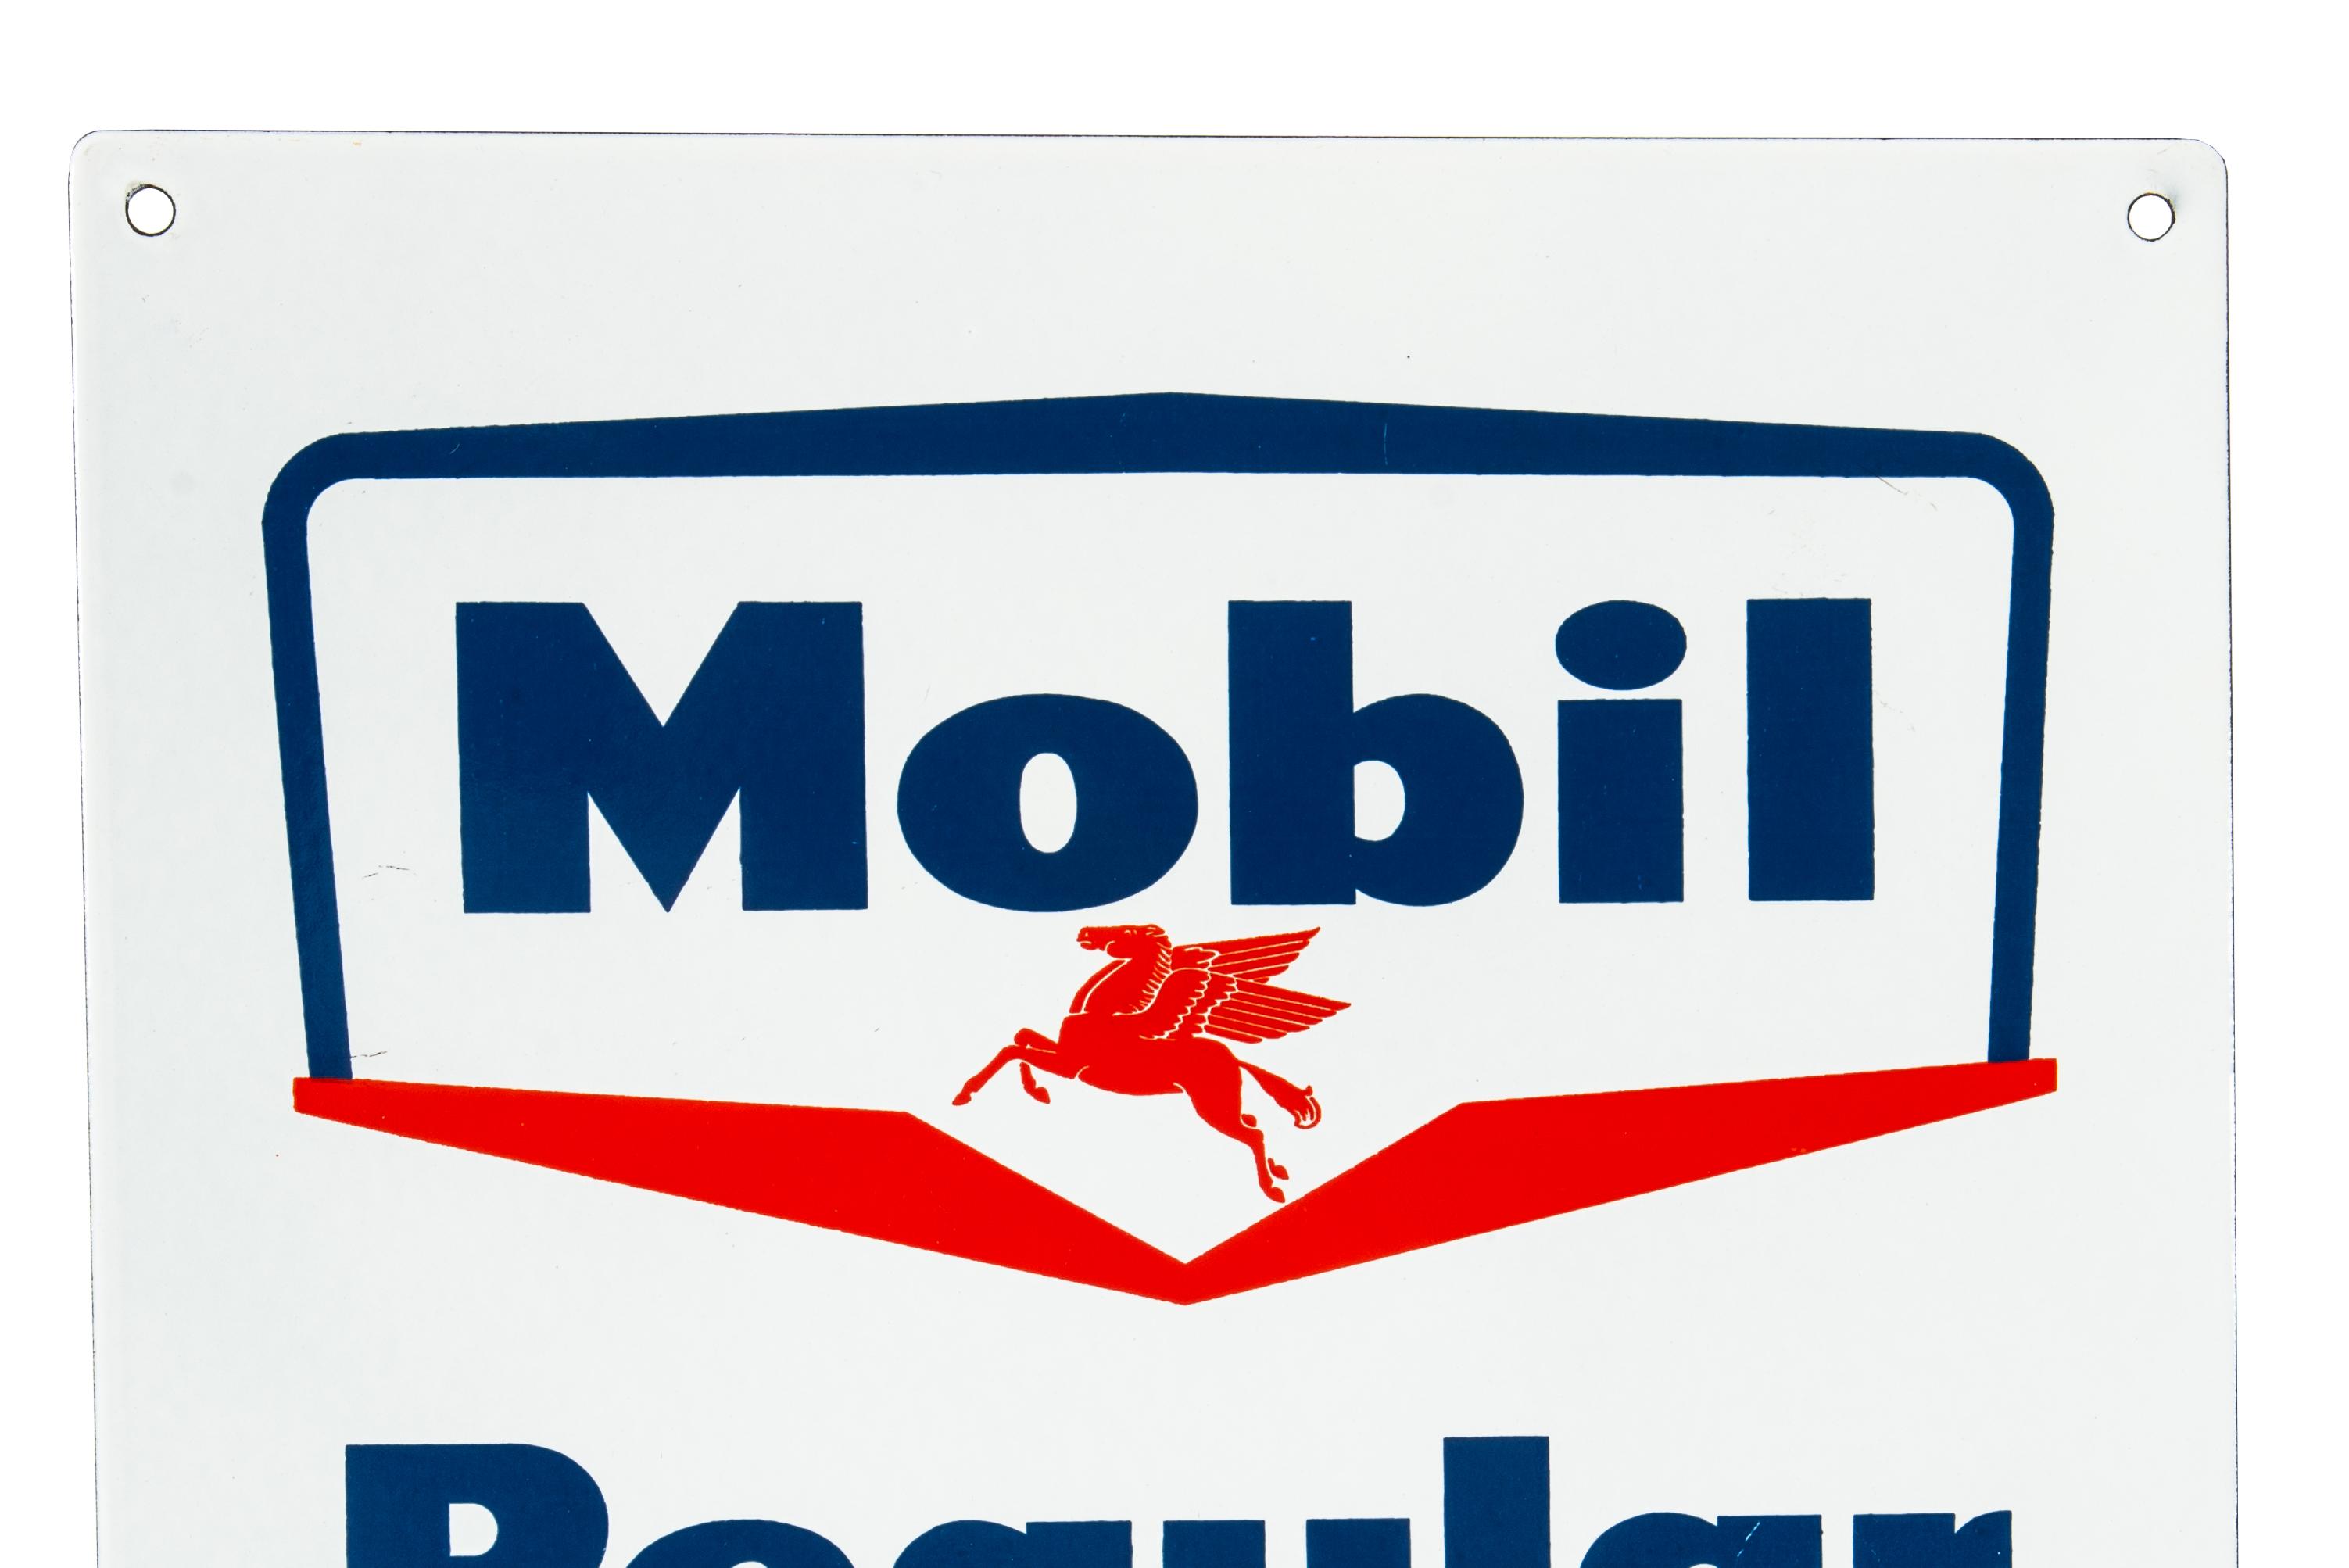 Mobil Regular Gasoline Porcelain Gas Pump Sign